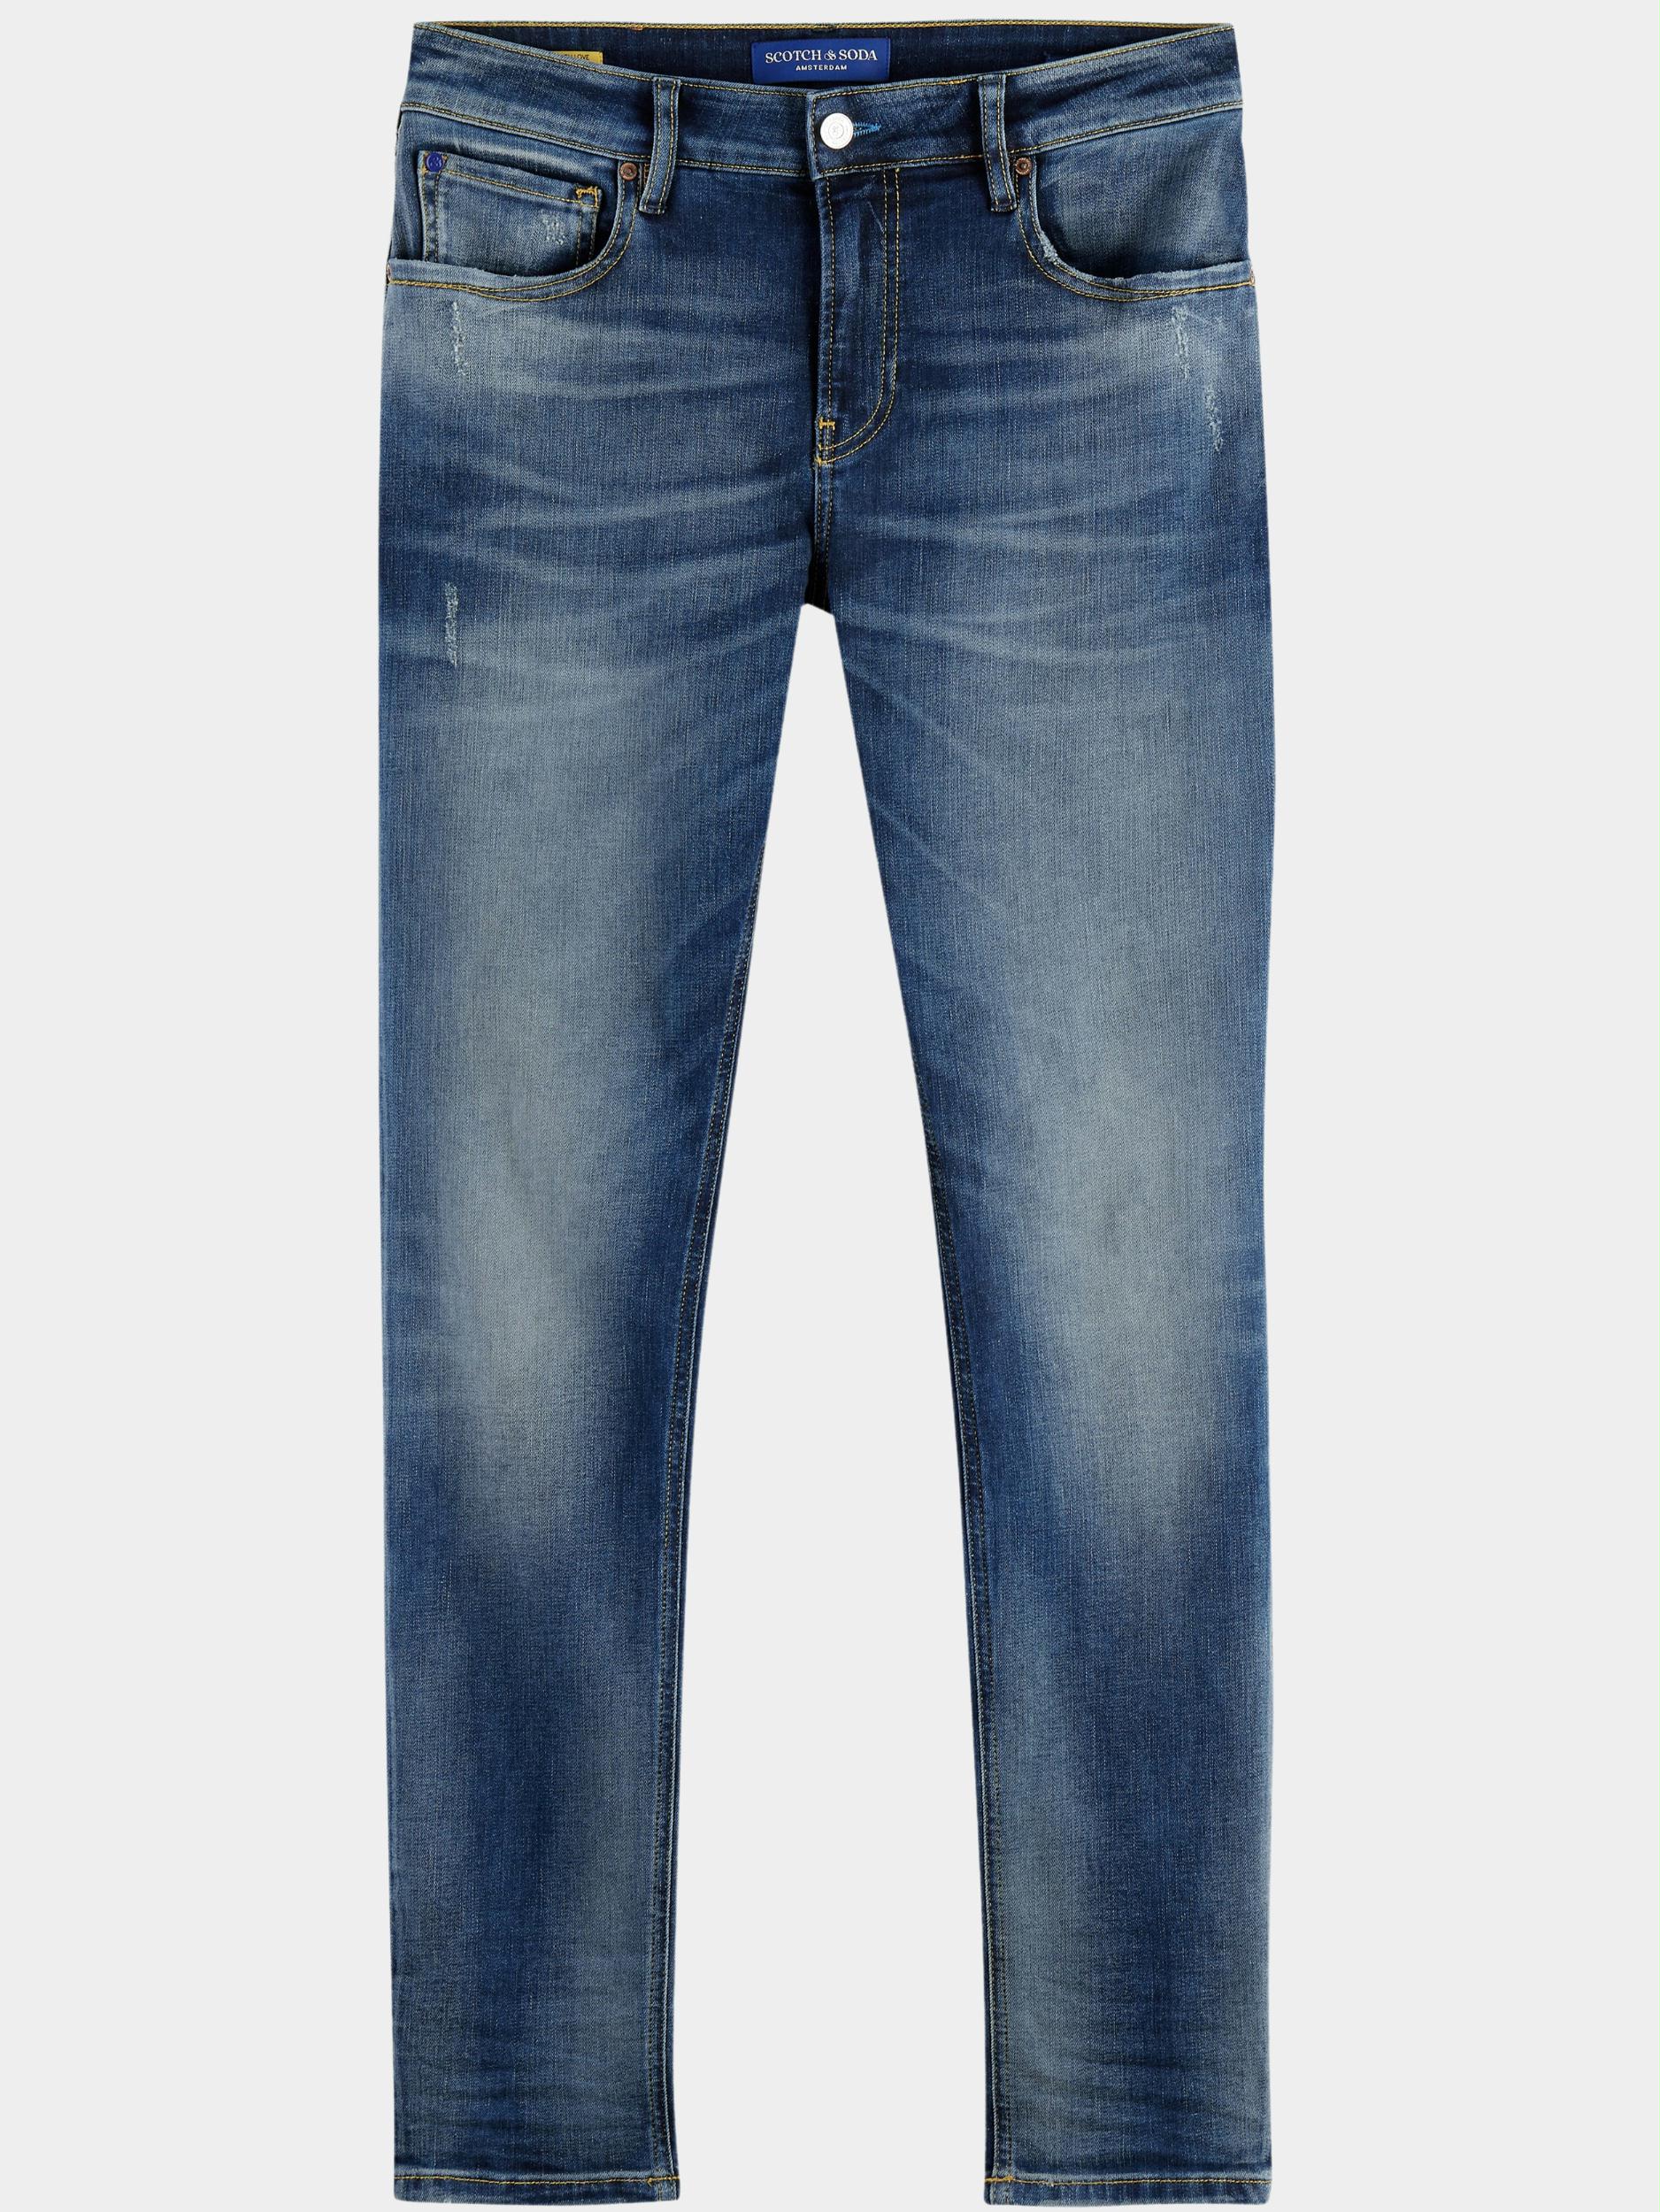 Scotch & Soda 5-Pocket Jeans Blauw Skim Skinny Jeans Seasonal Ess 168991/1031